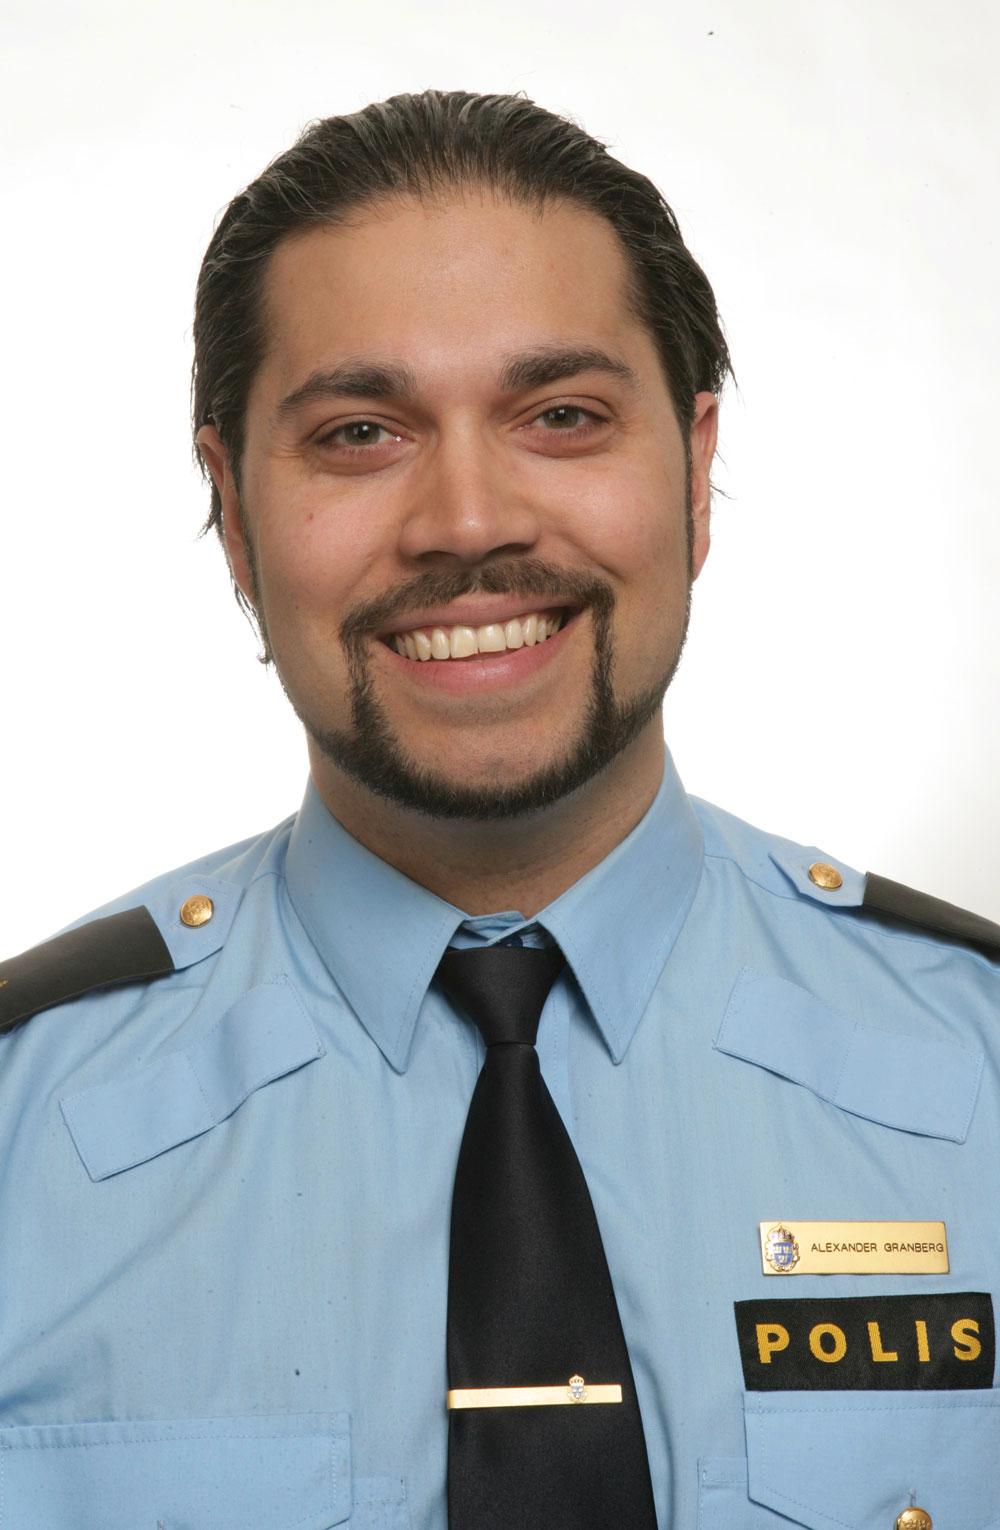 Alexander Granberg, polisinspektör och ansvarig för införandet av ANPR